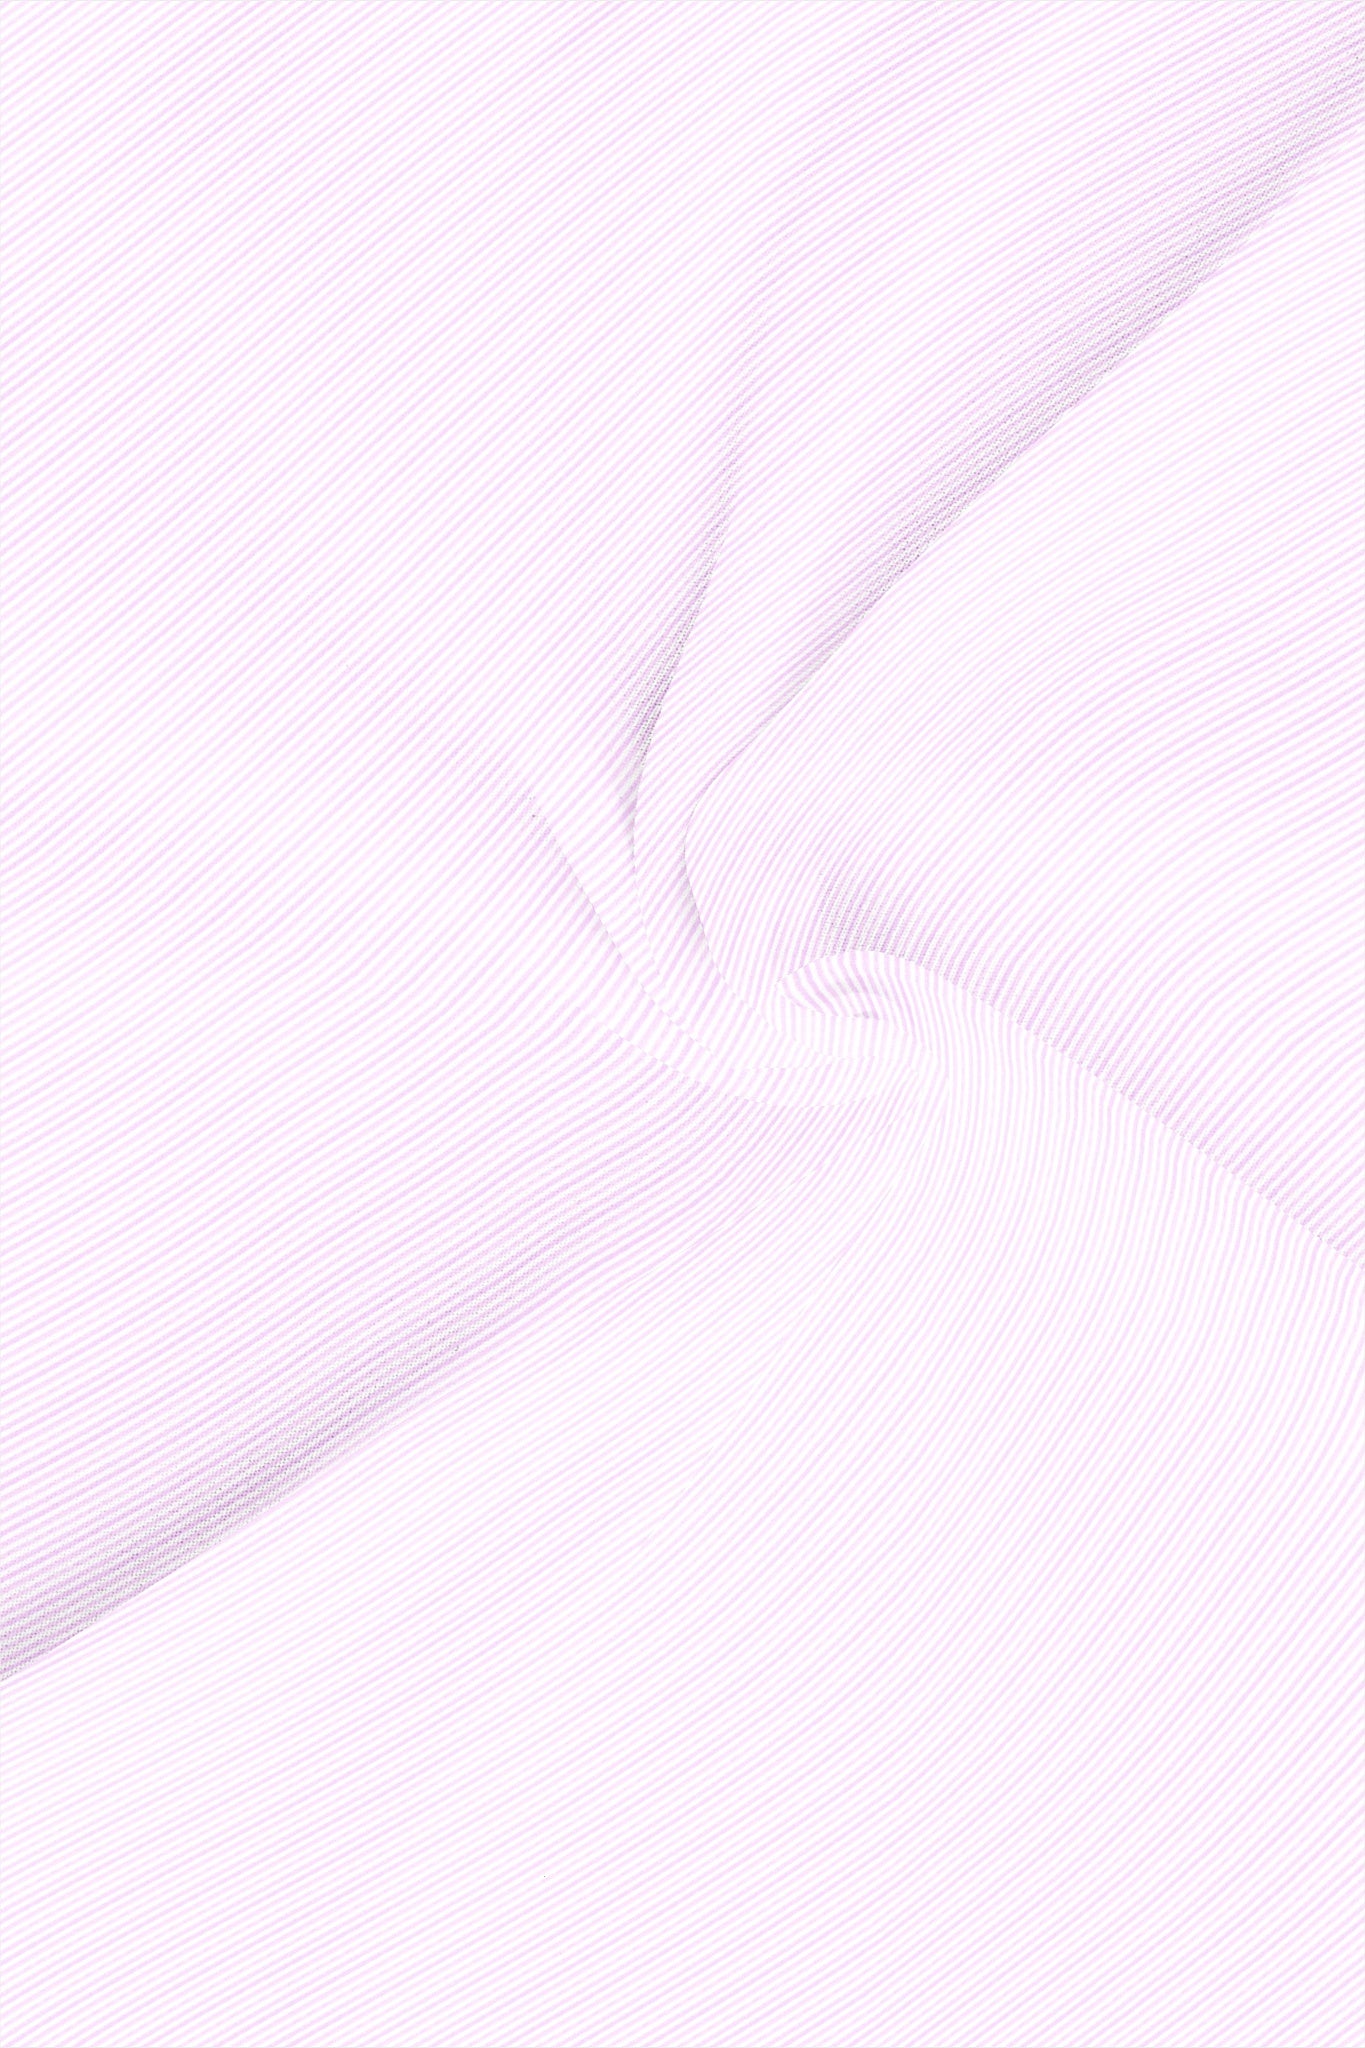 Grape Taffy Pink with White Pin Stripe Men's Cotton Shirt